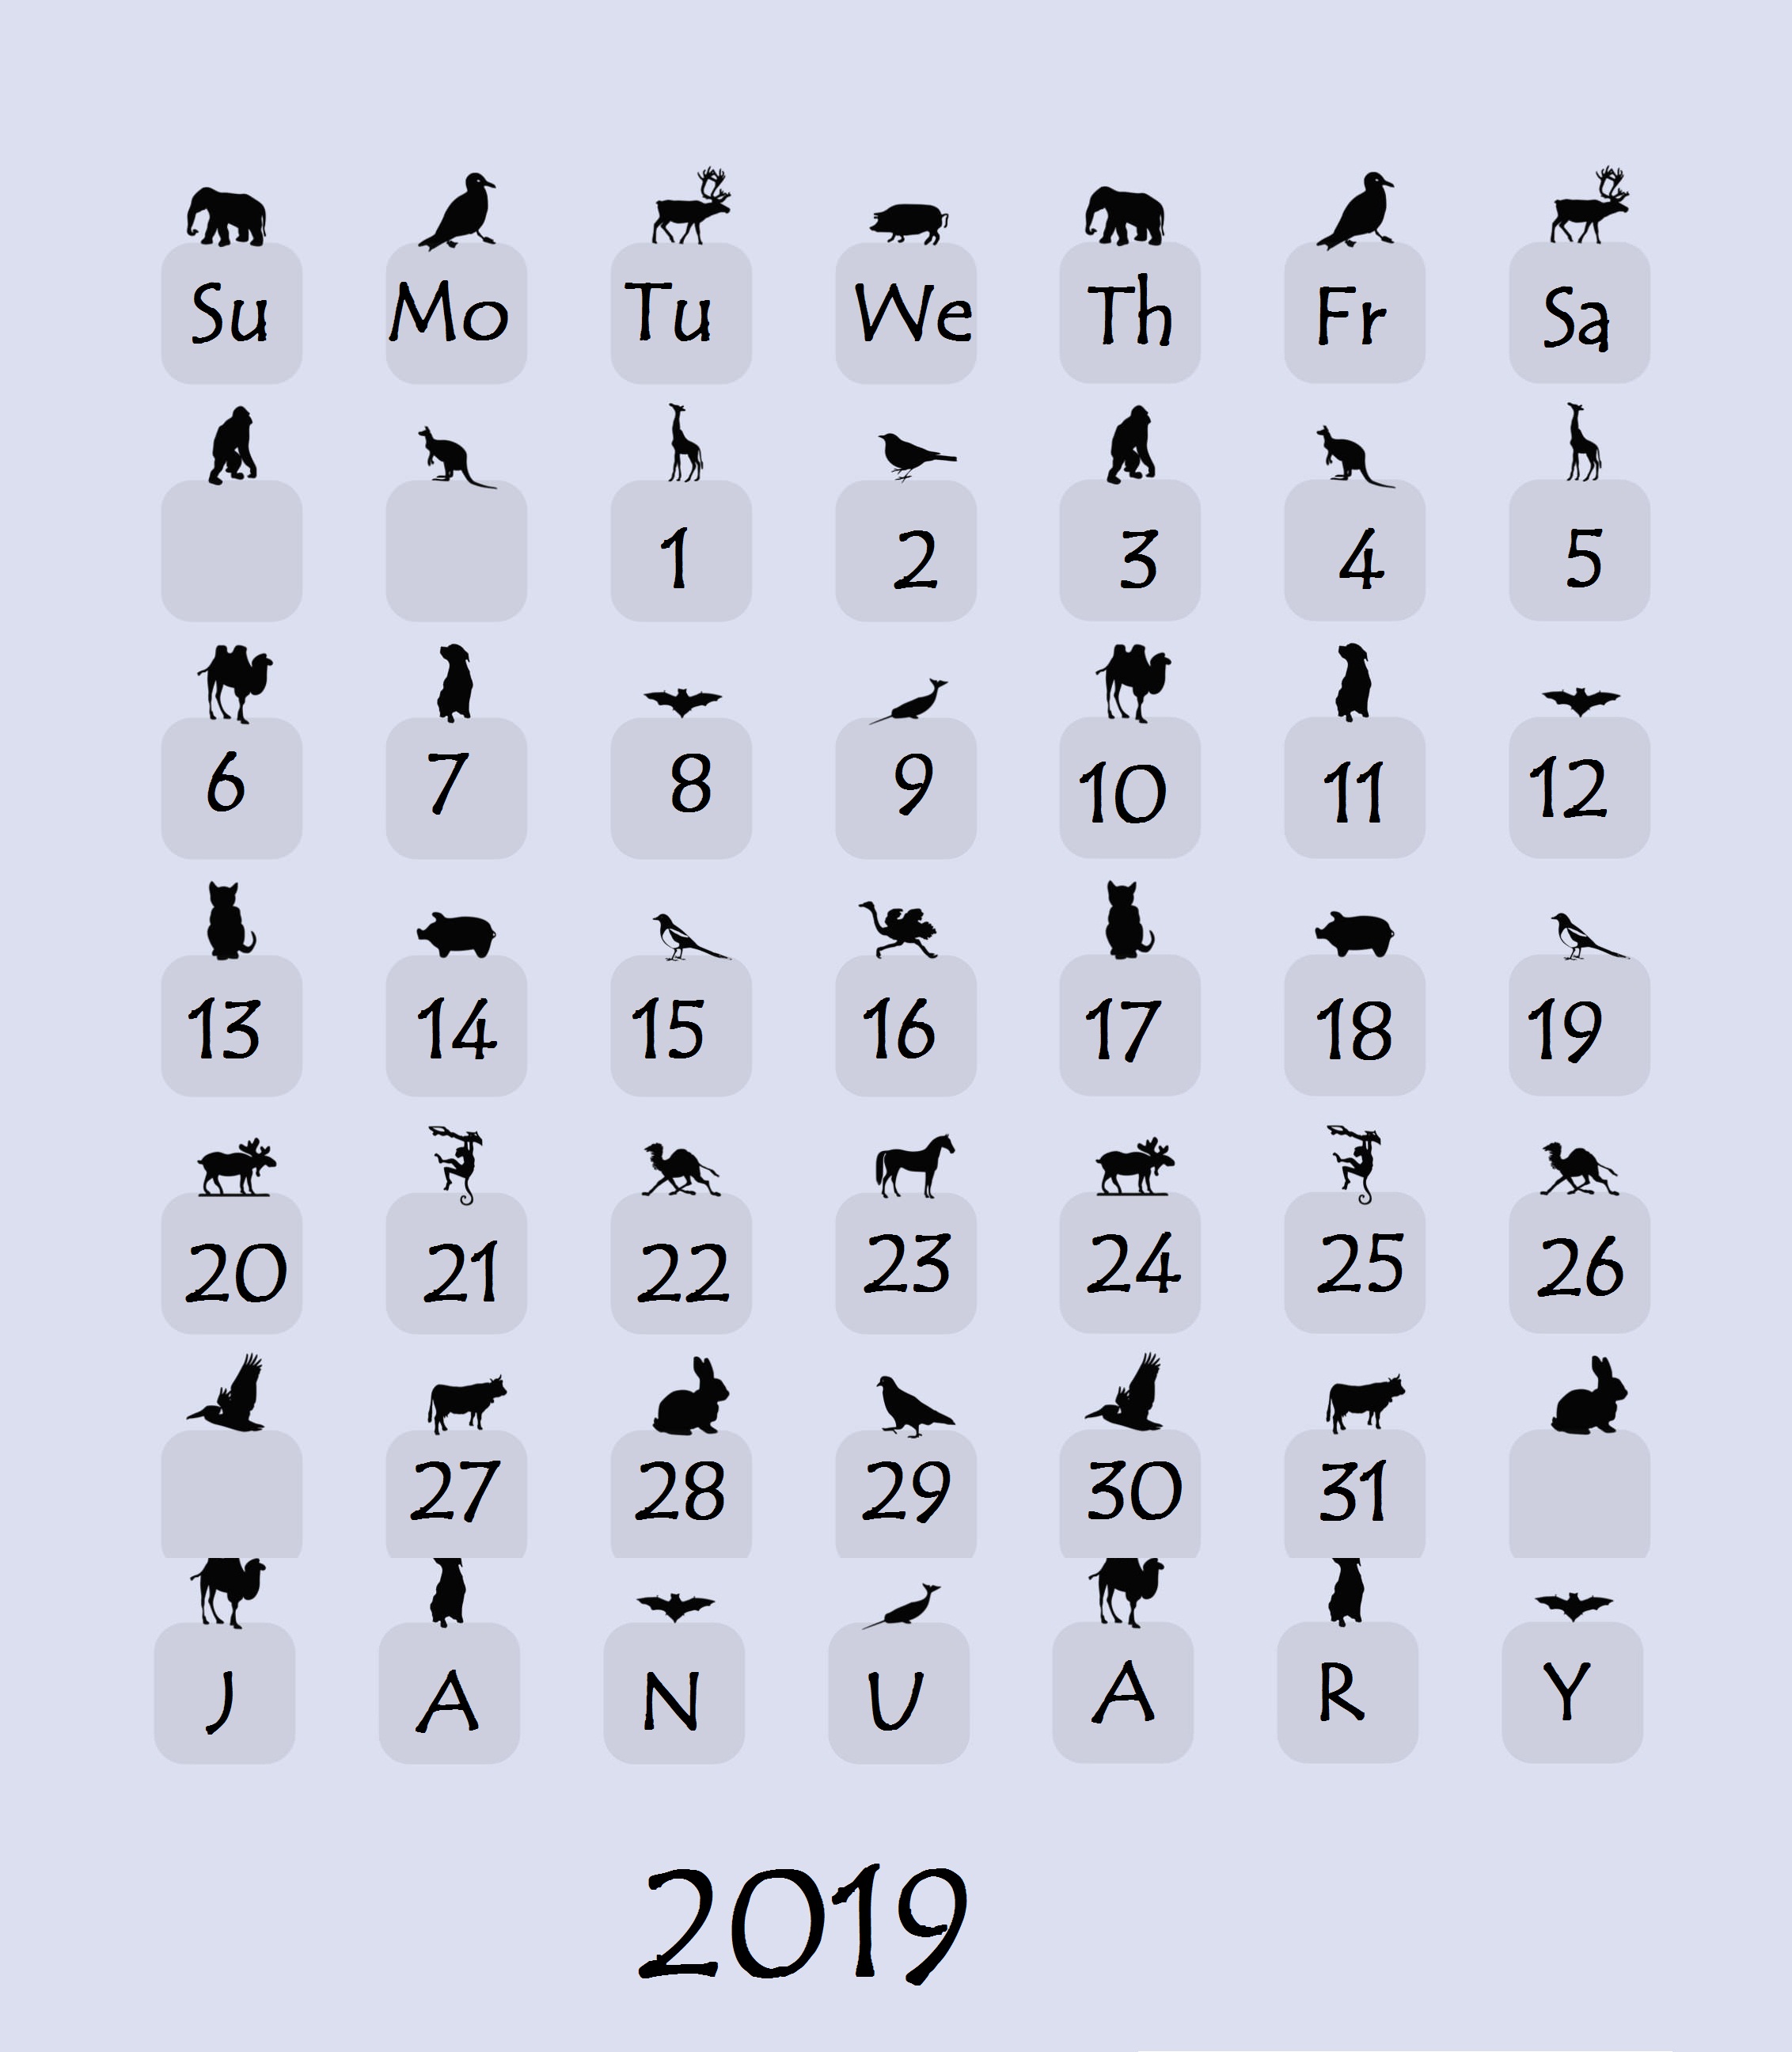 January 2019 Iphone Simple Calendar Wallpaper January - January Walpaper For Iphone For 2019 , HD Wallpaper & Backgrounds